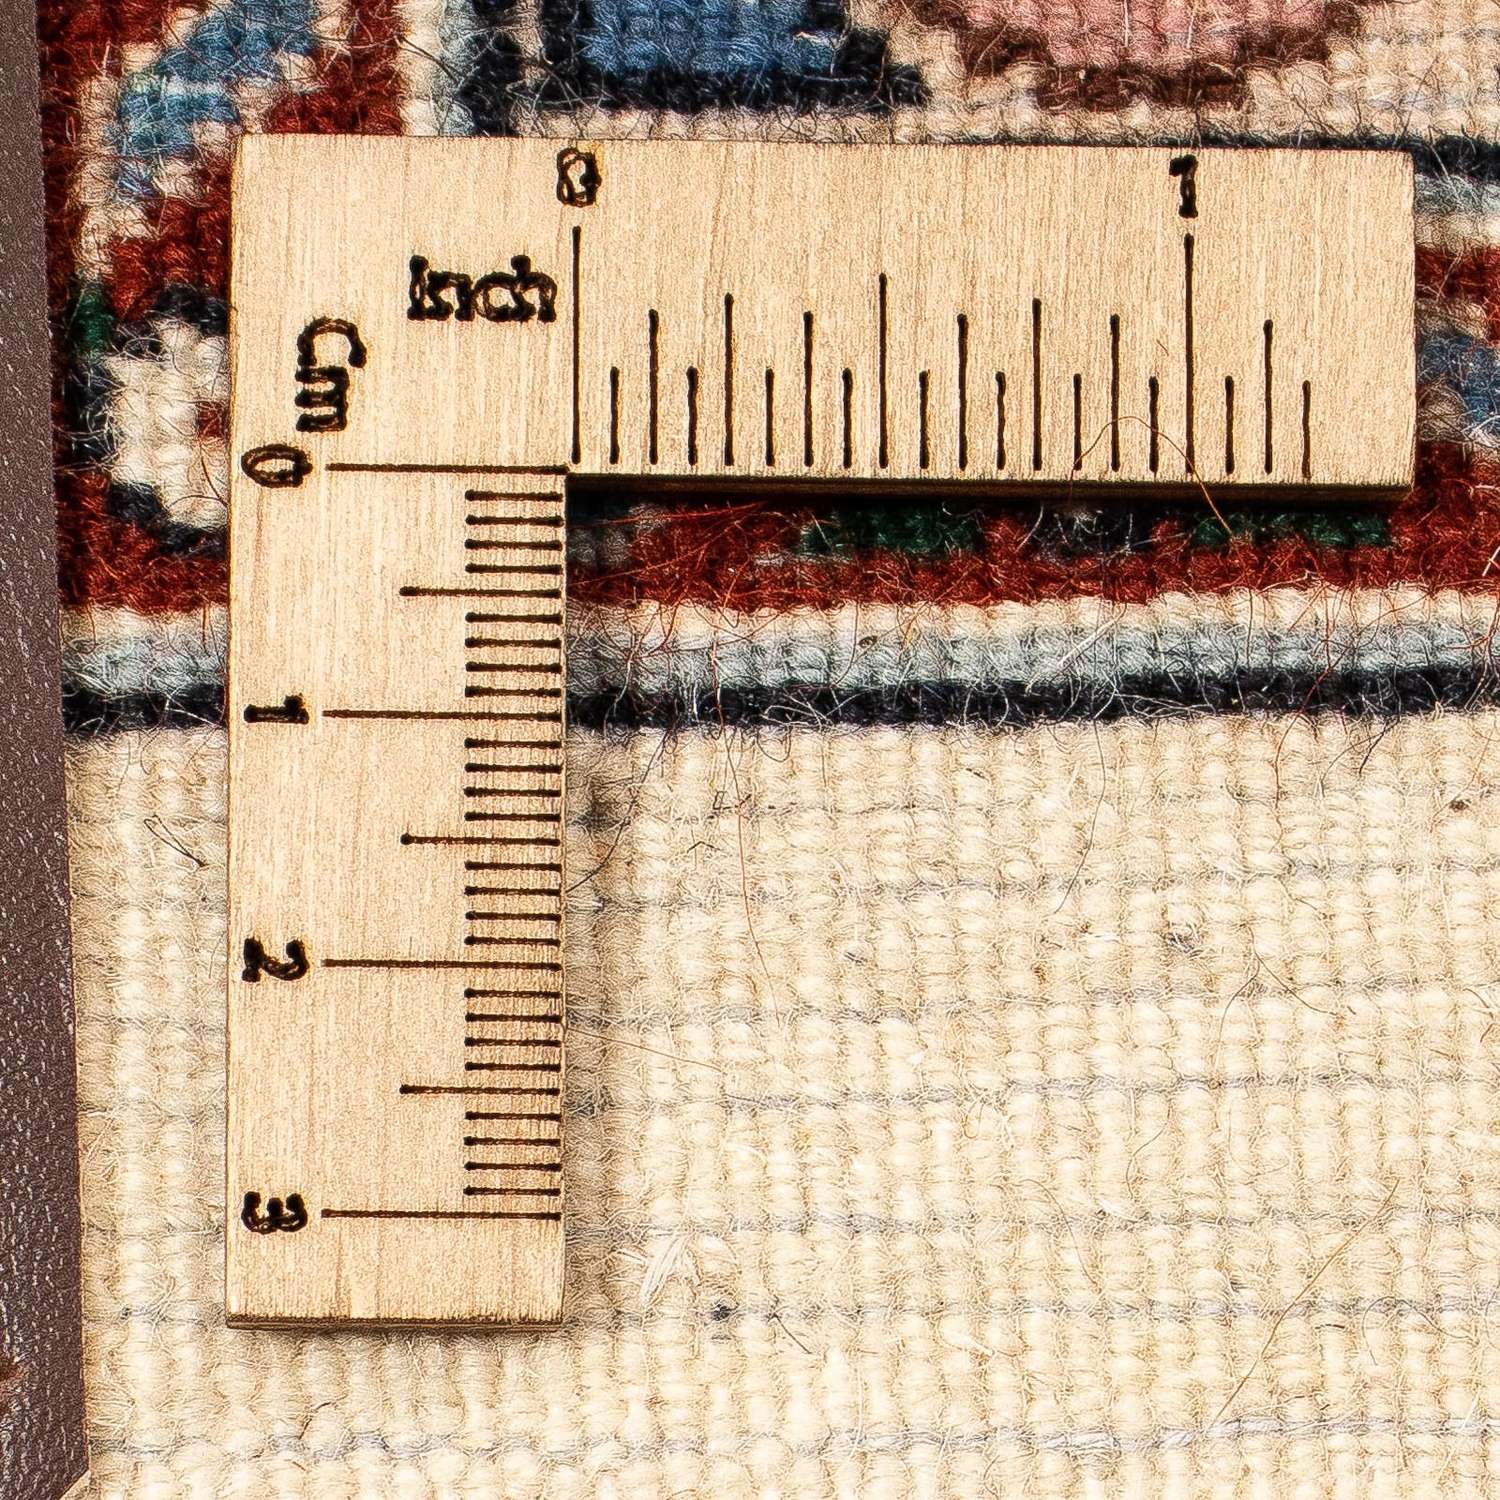 Tapete Persa - Clássico praça  - 262 x 250 cm - castanho claro